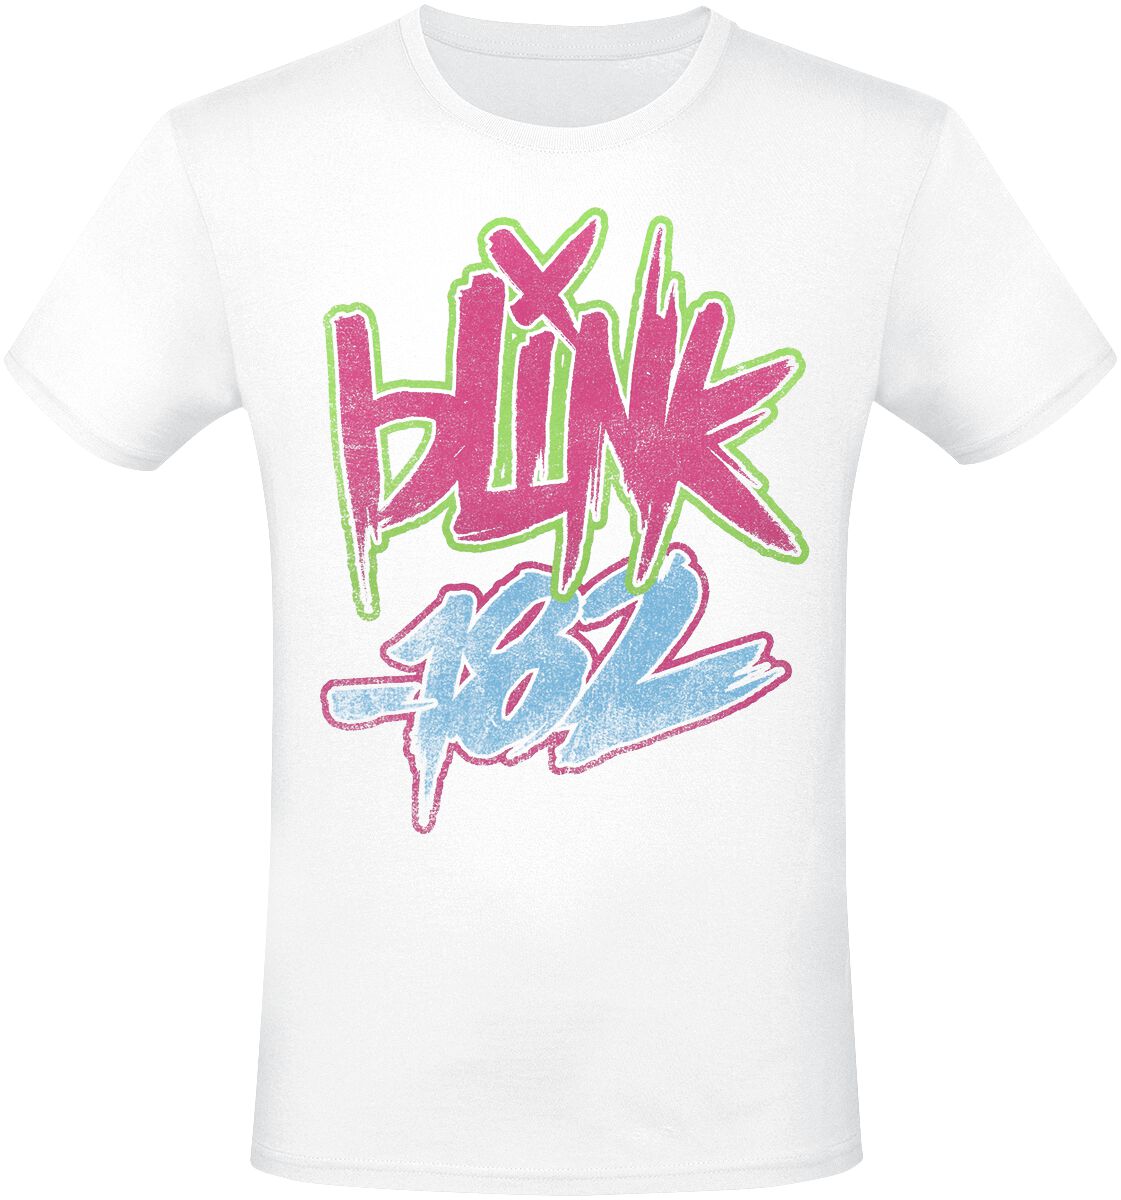 Blink-182 T-Shirt - Text - S bis 3XL - für Männer - Größe XL - weiß  - Lizenziertes Merchandise!